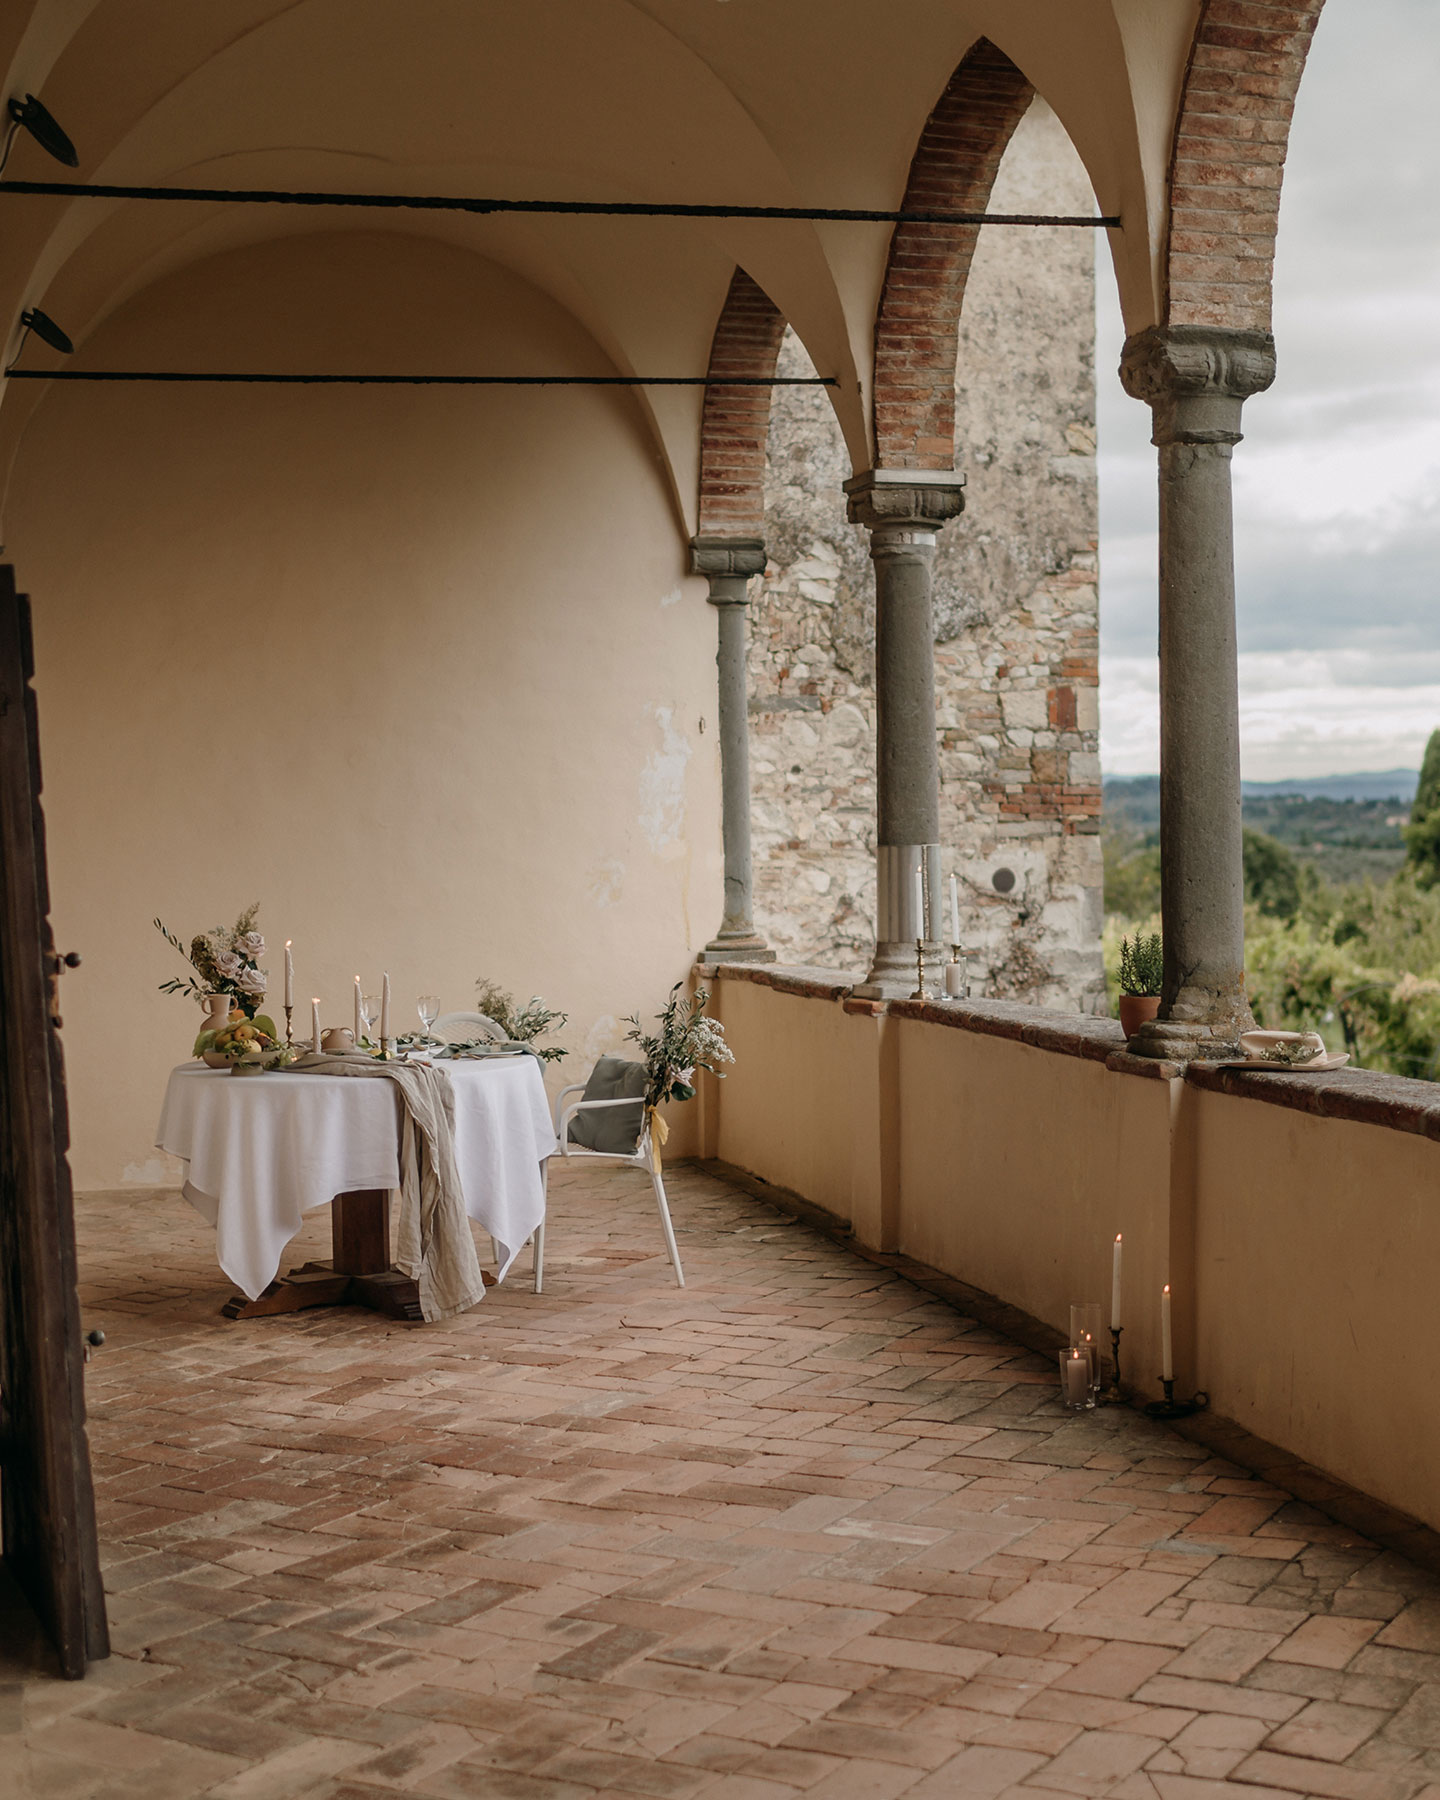 Der gedeckte Hochzeitstisch befindet sich im überdachten Balkonbereich der Hochzeitslocation in Italien. Er ist geschmückt mit einer weißen Tischdeko, Blumenarrangements und Kerzen, sowie Zitrusfrüchten und Feigen.